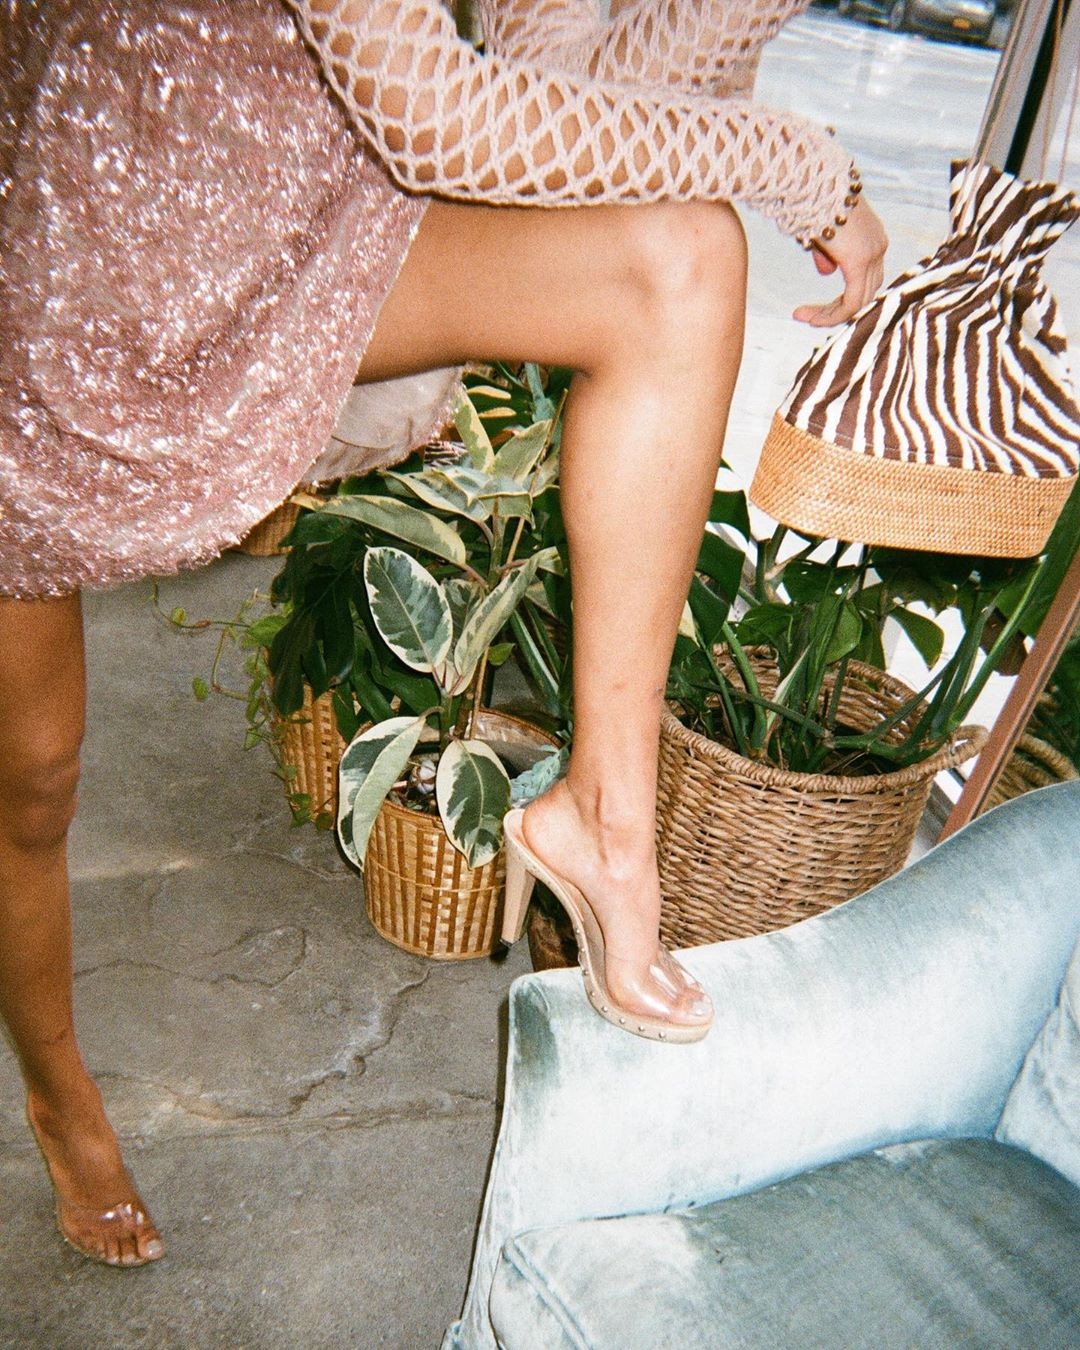 Sandália com detalhe transparente. (Foto: Instagram)